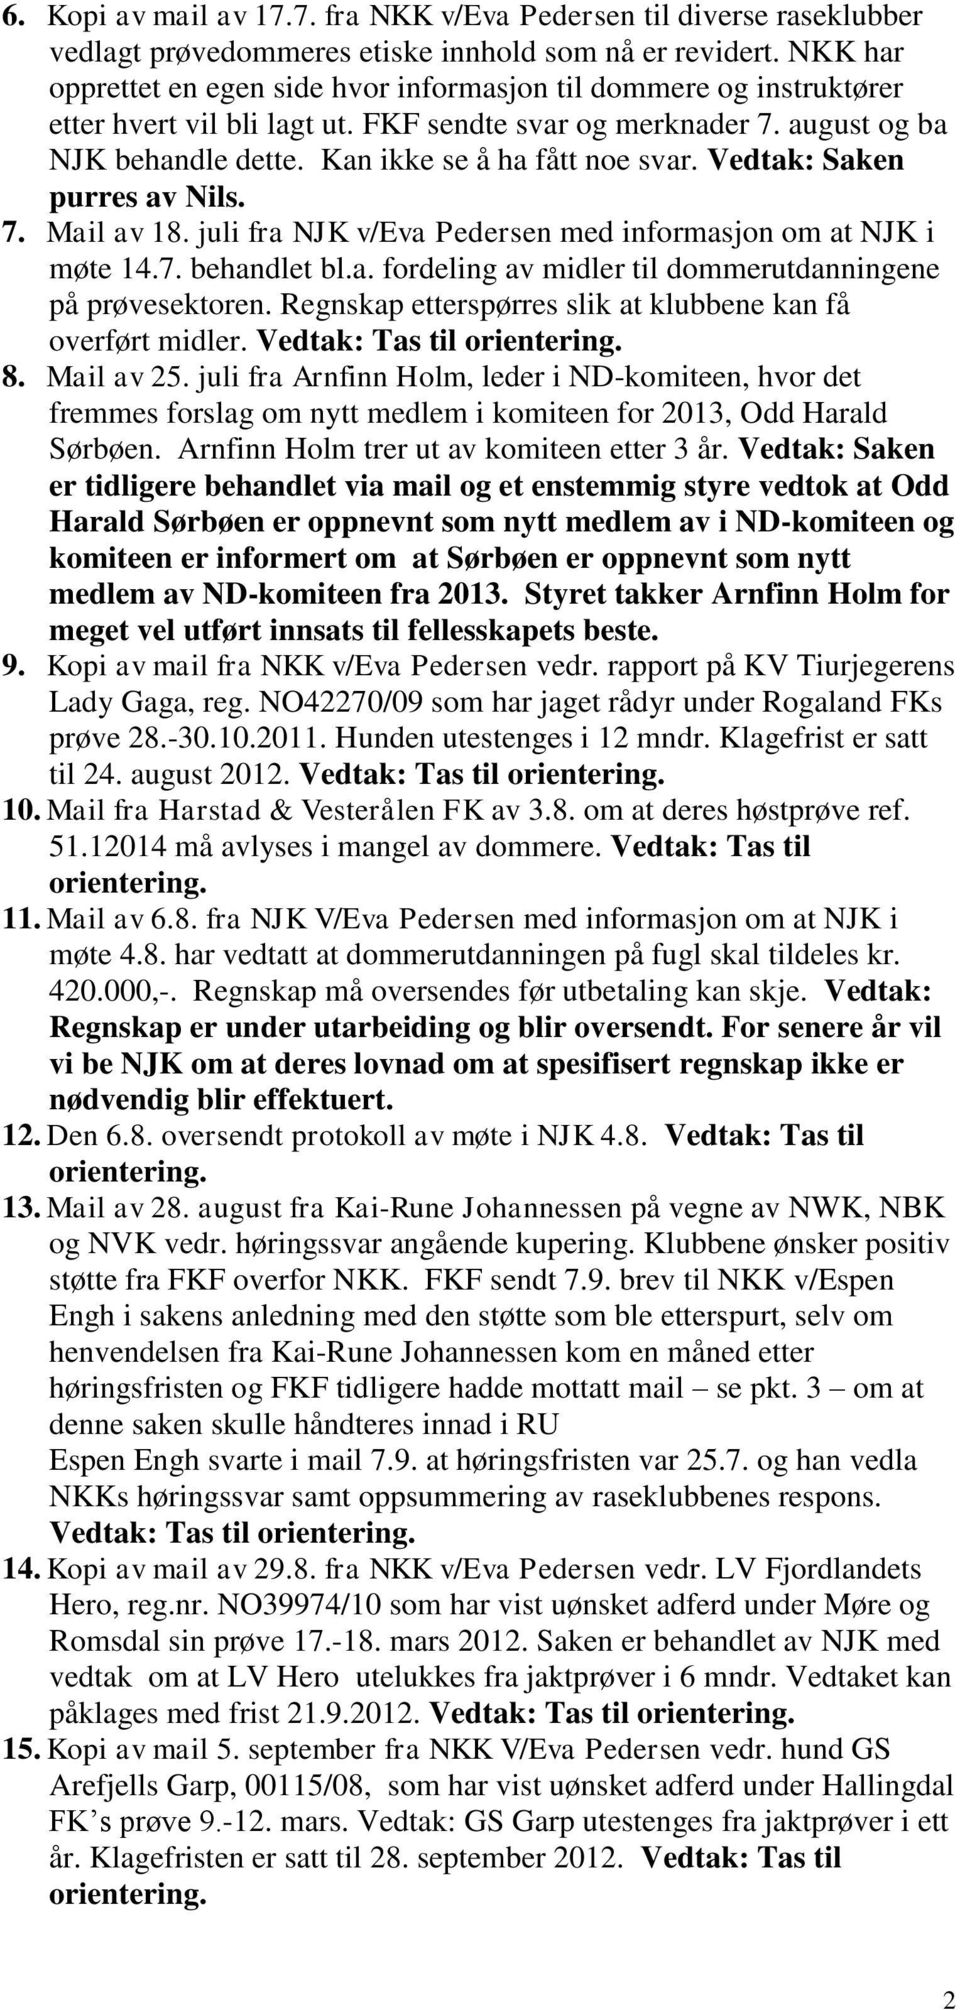 Kan ikke se å ha fått noe svar. Vedtak: Saken purres av Nils. 7. Mail av 18. juli fra NJK v/eva Pedersen med informasjon om at NJK i møte 14.7. behandlet bl.a. fordeling av midler til dommerutdanningene på prøvesektoren.